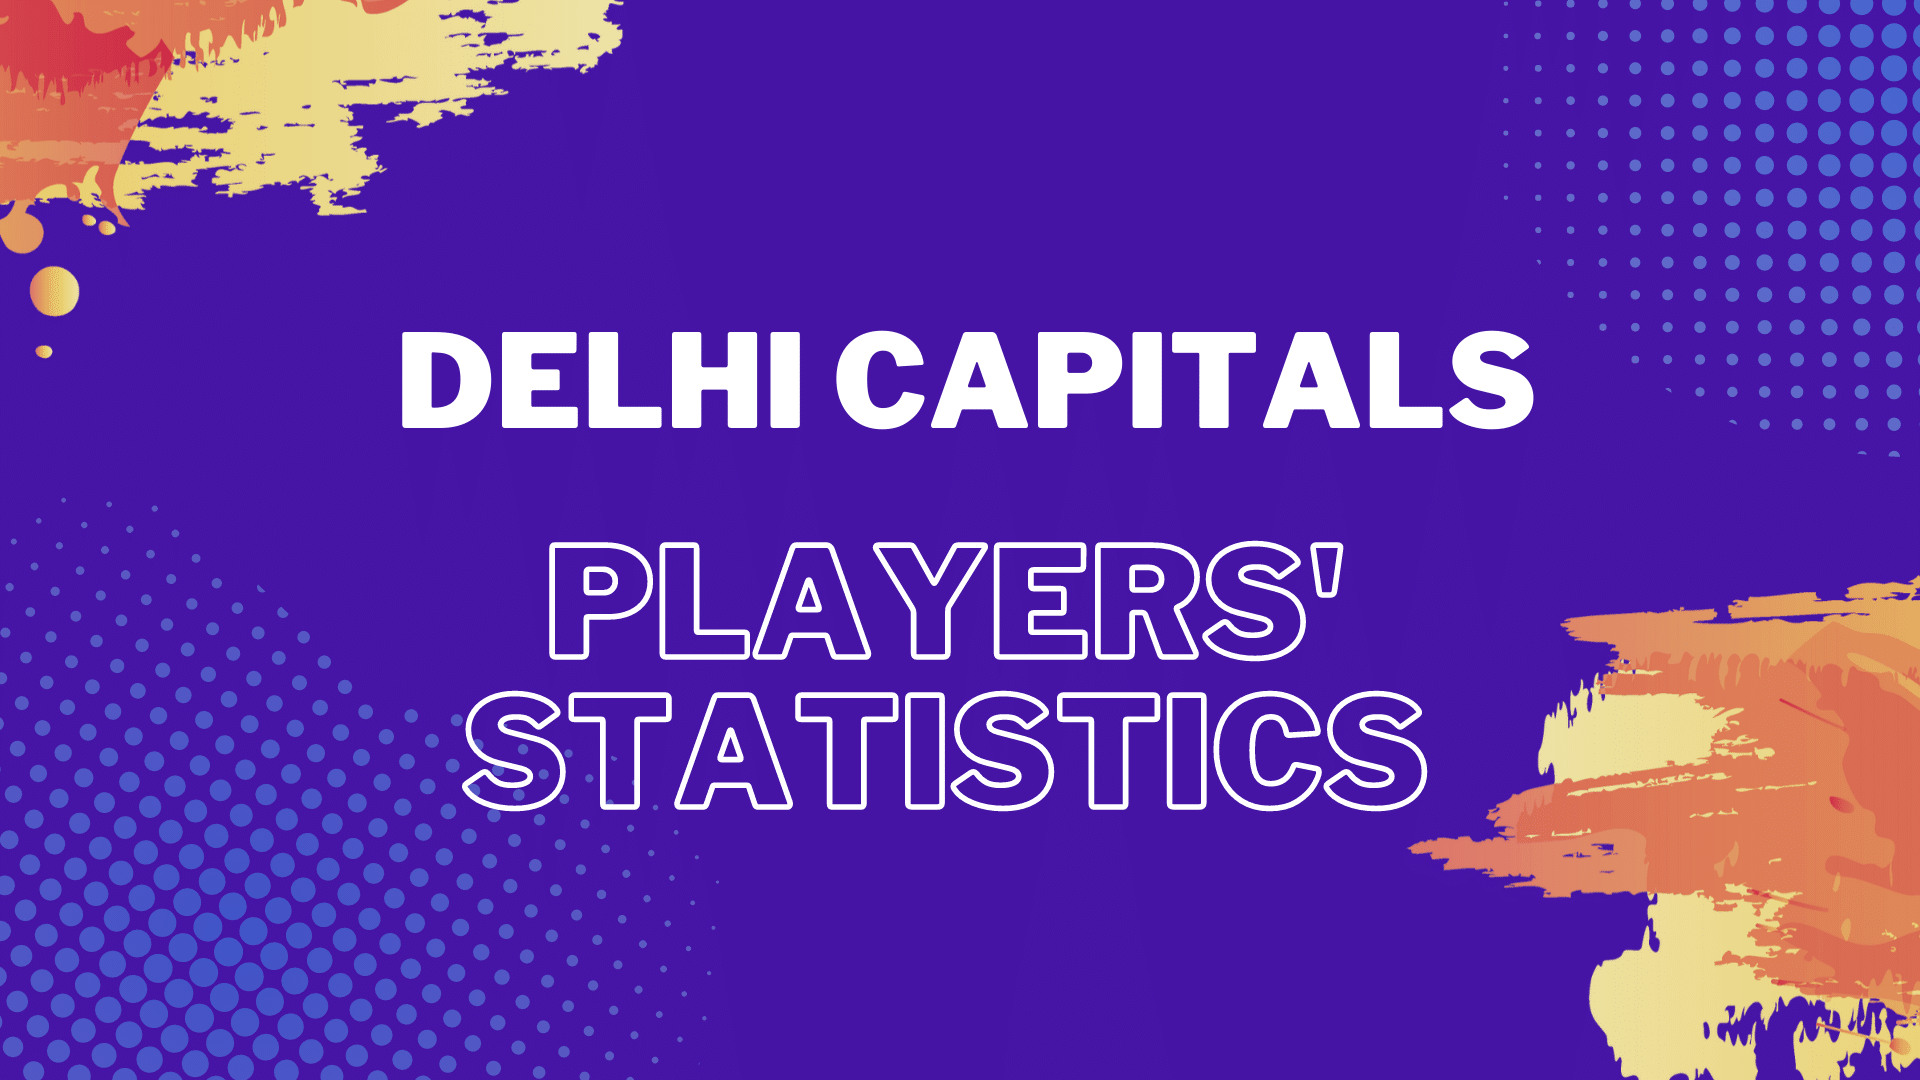 Delhi Capitals all time stats